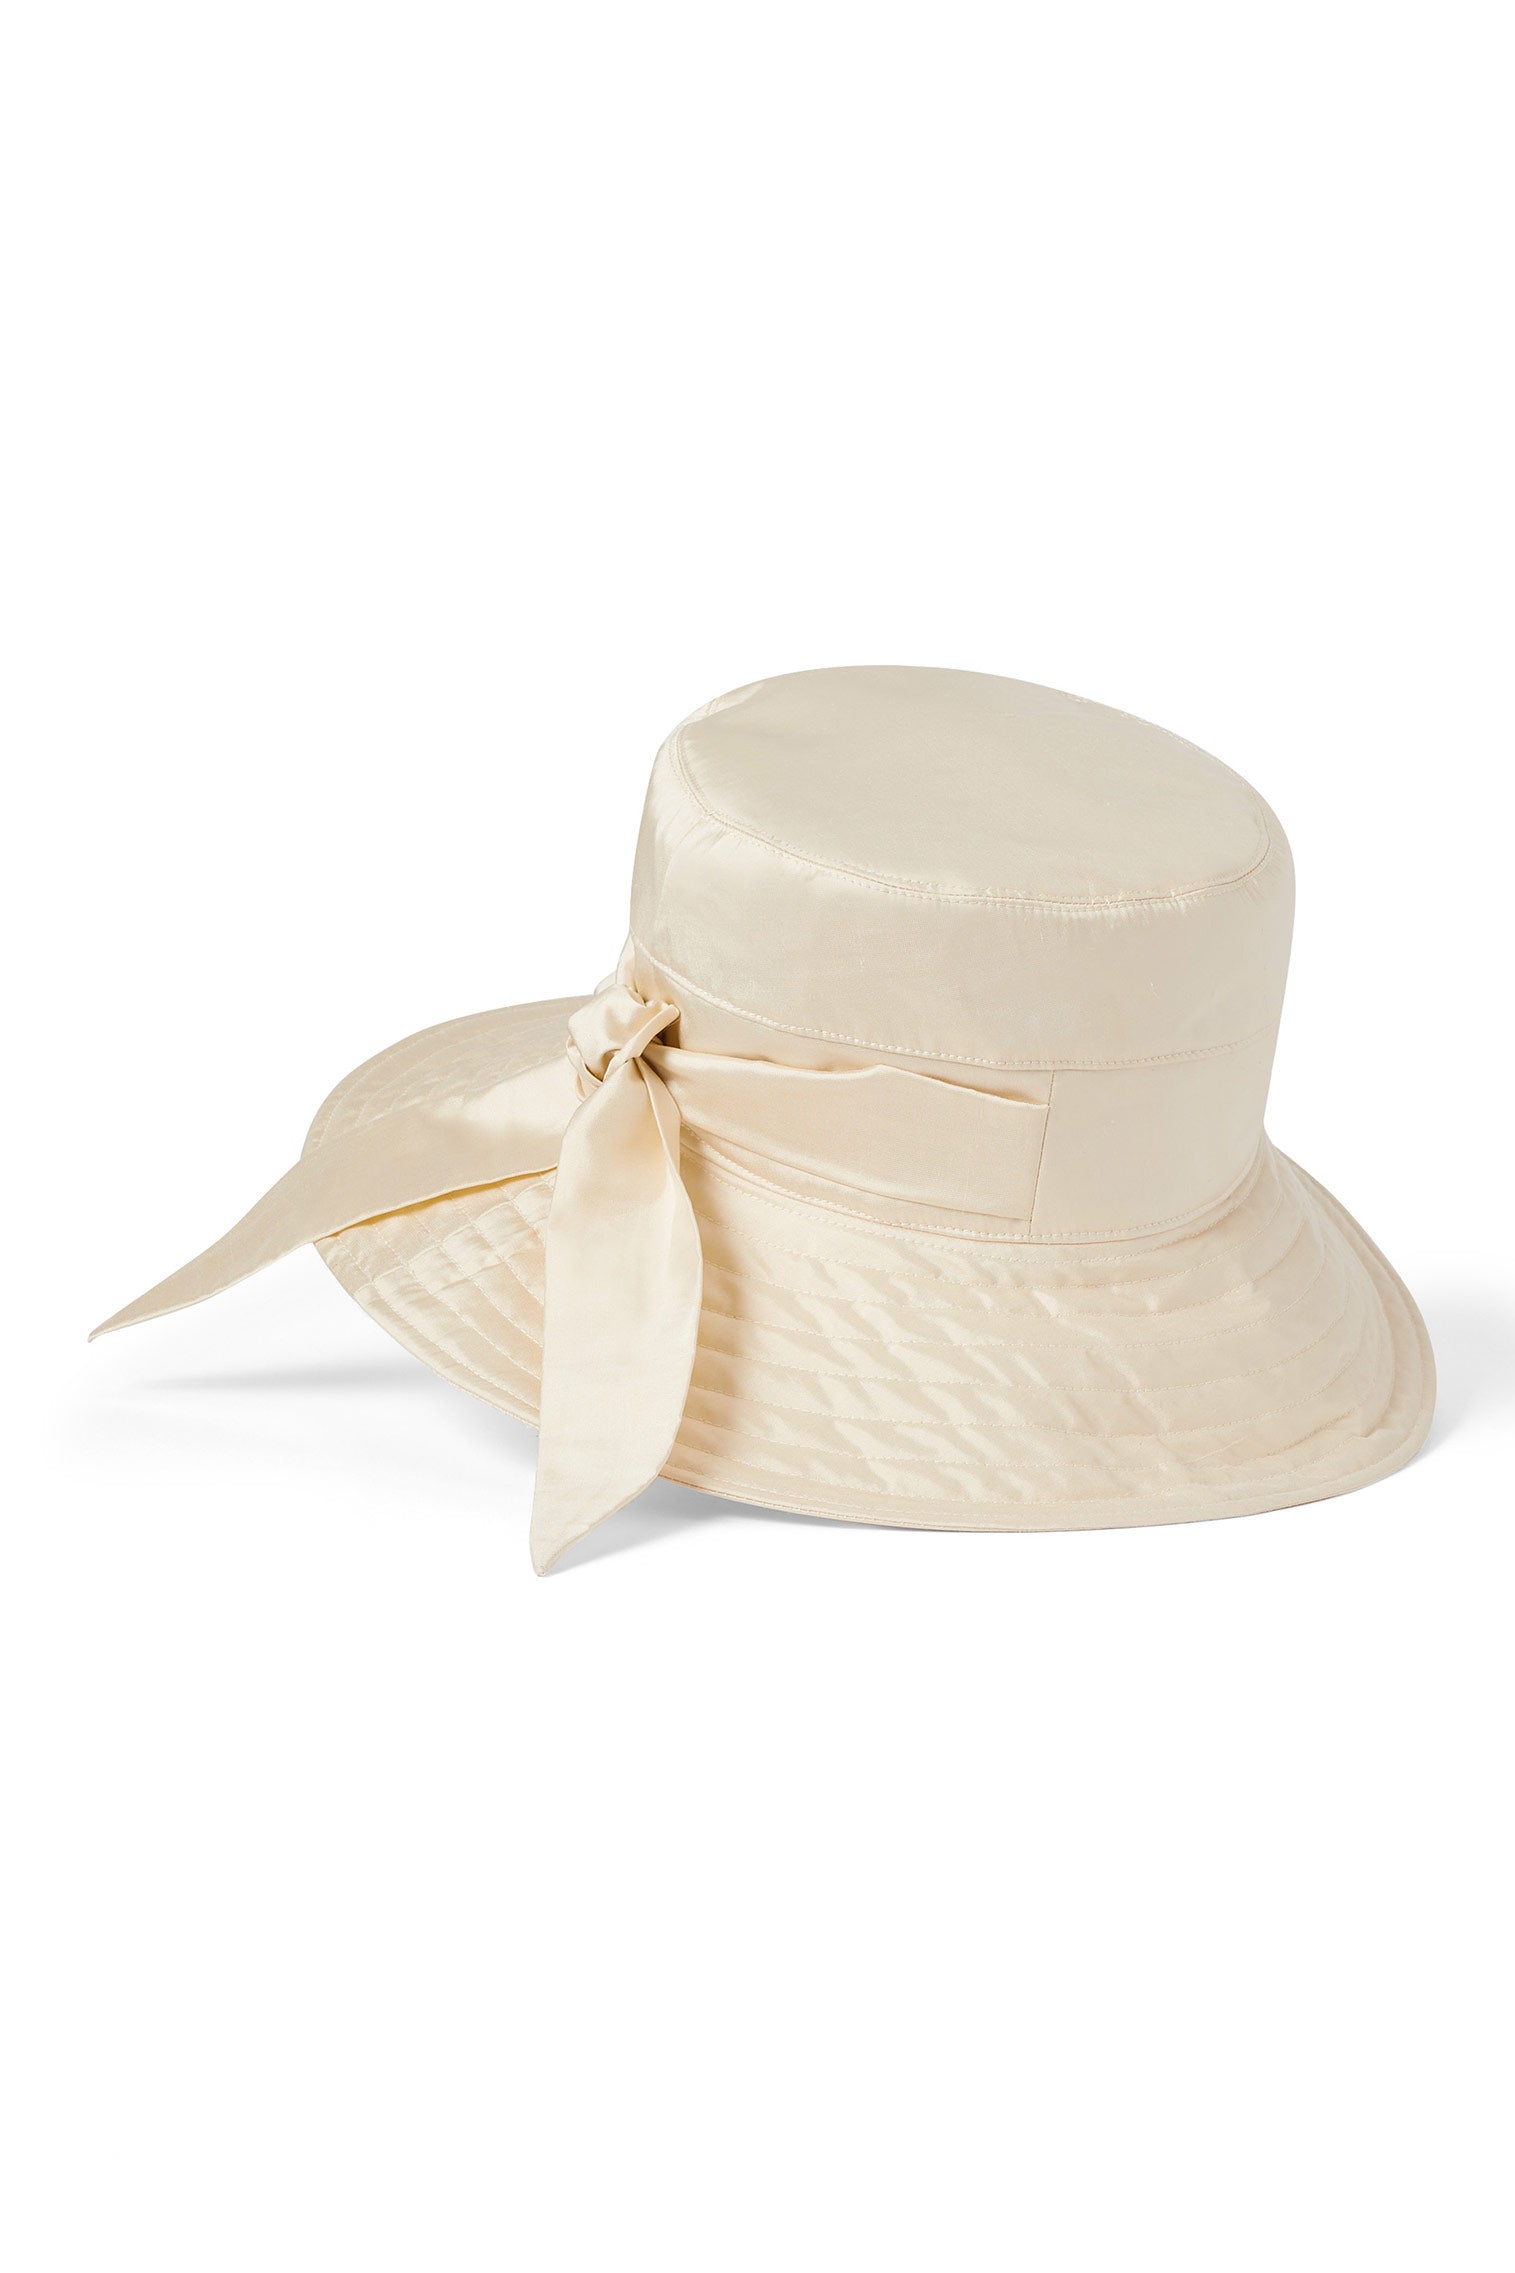 Brigitte Silk Sun Hat - Products - Lock & Co. Hatters London UK